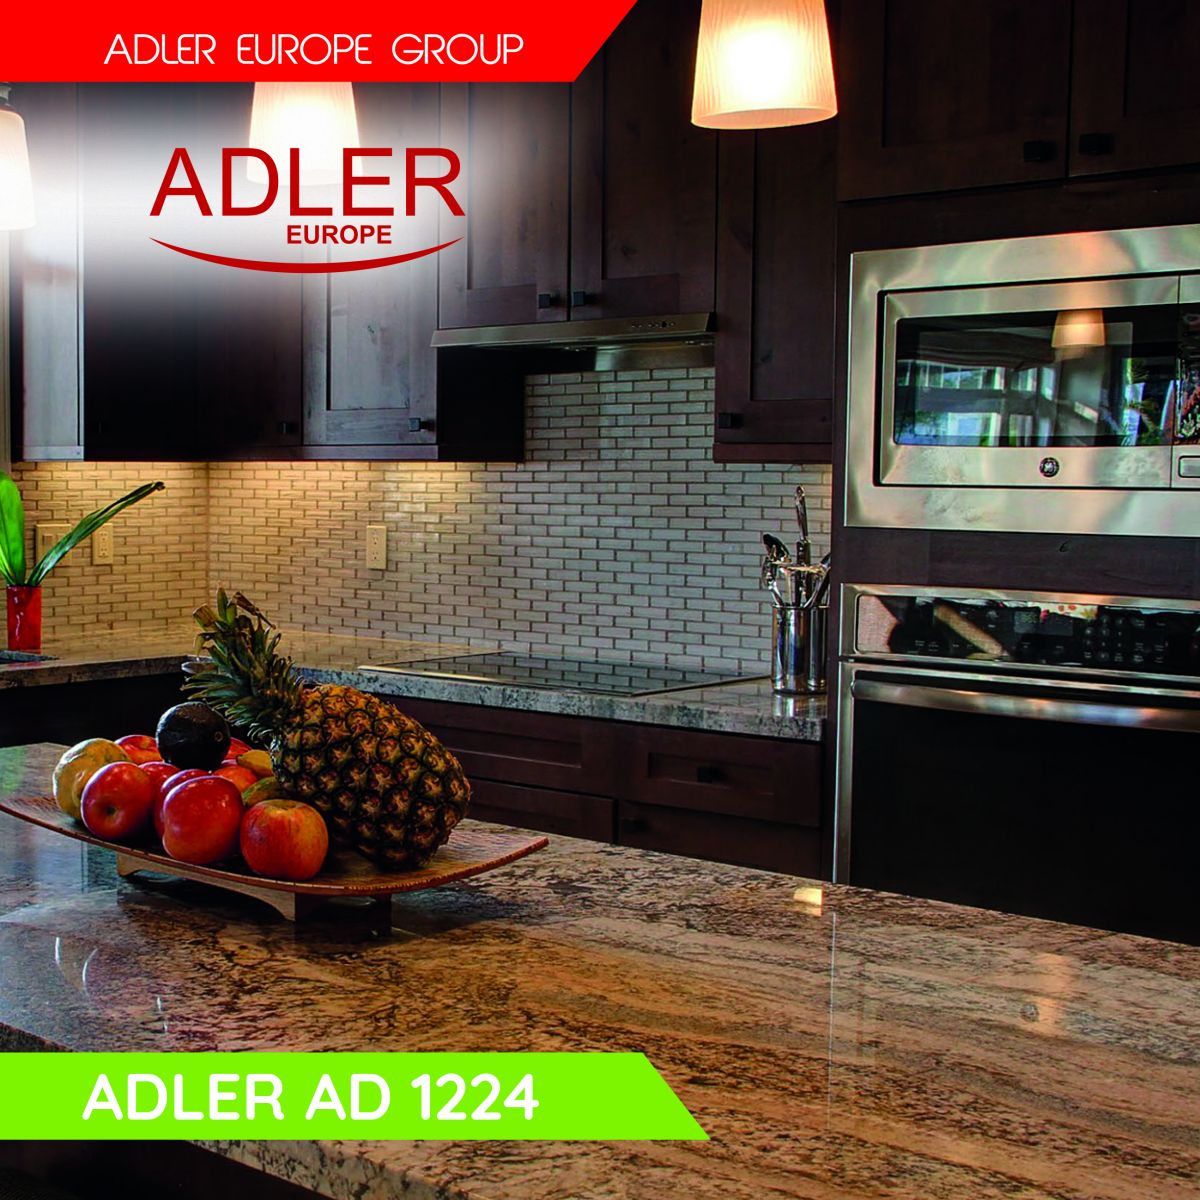 Adler AD 1224 Kettle glass 1,5 L